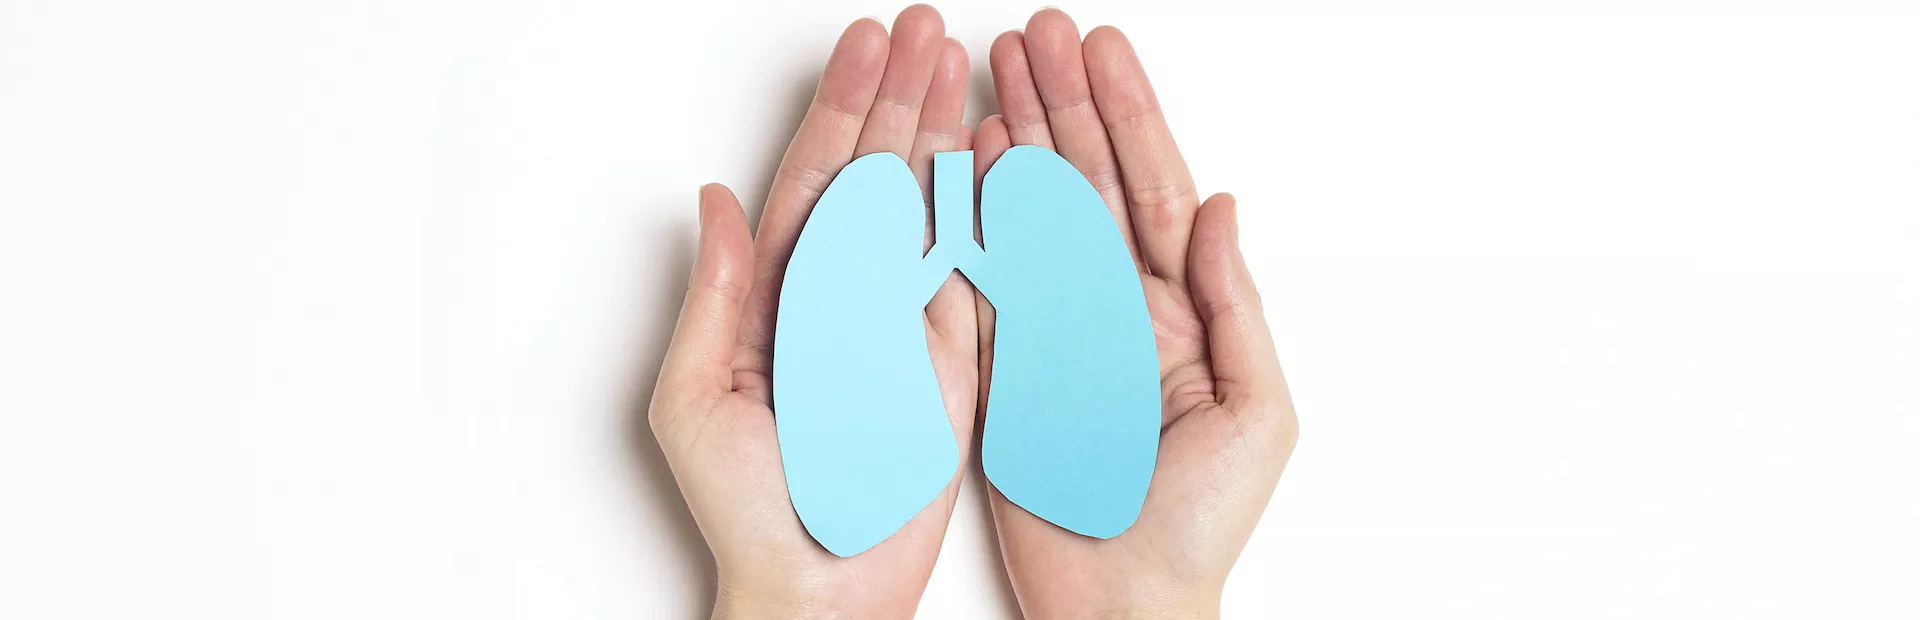 pulmones de papel en manos image_1